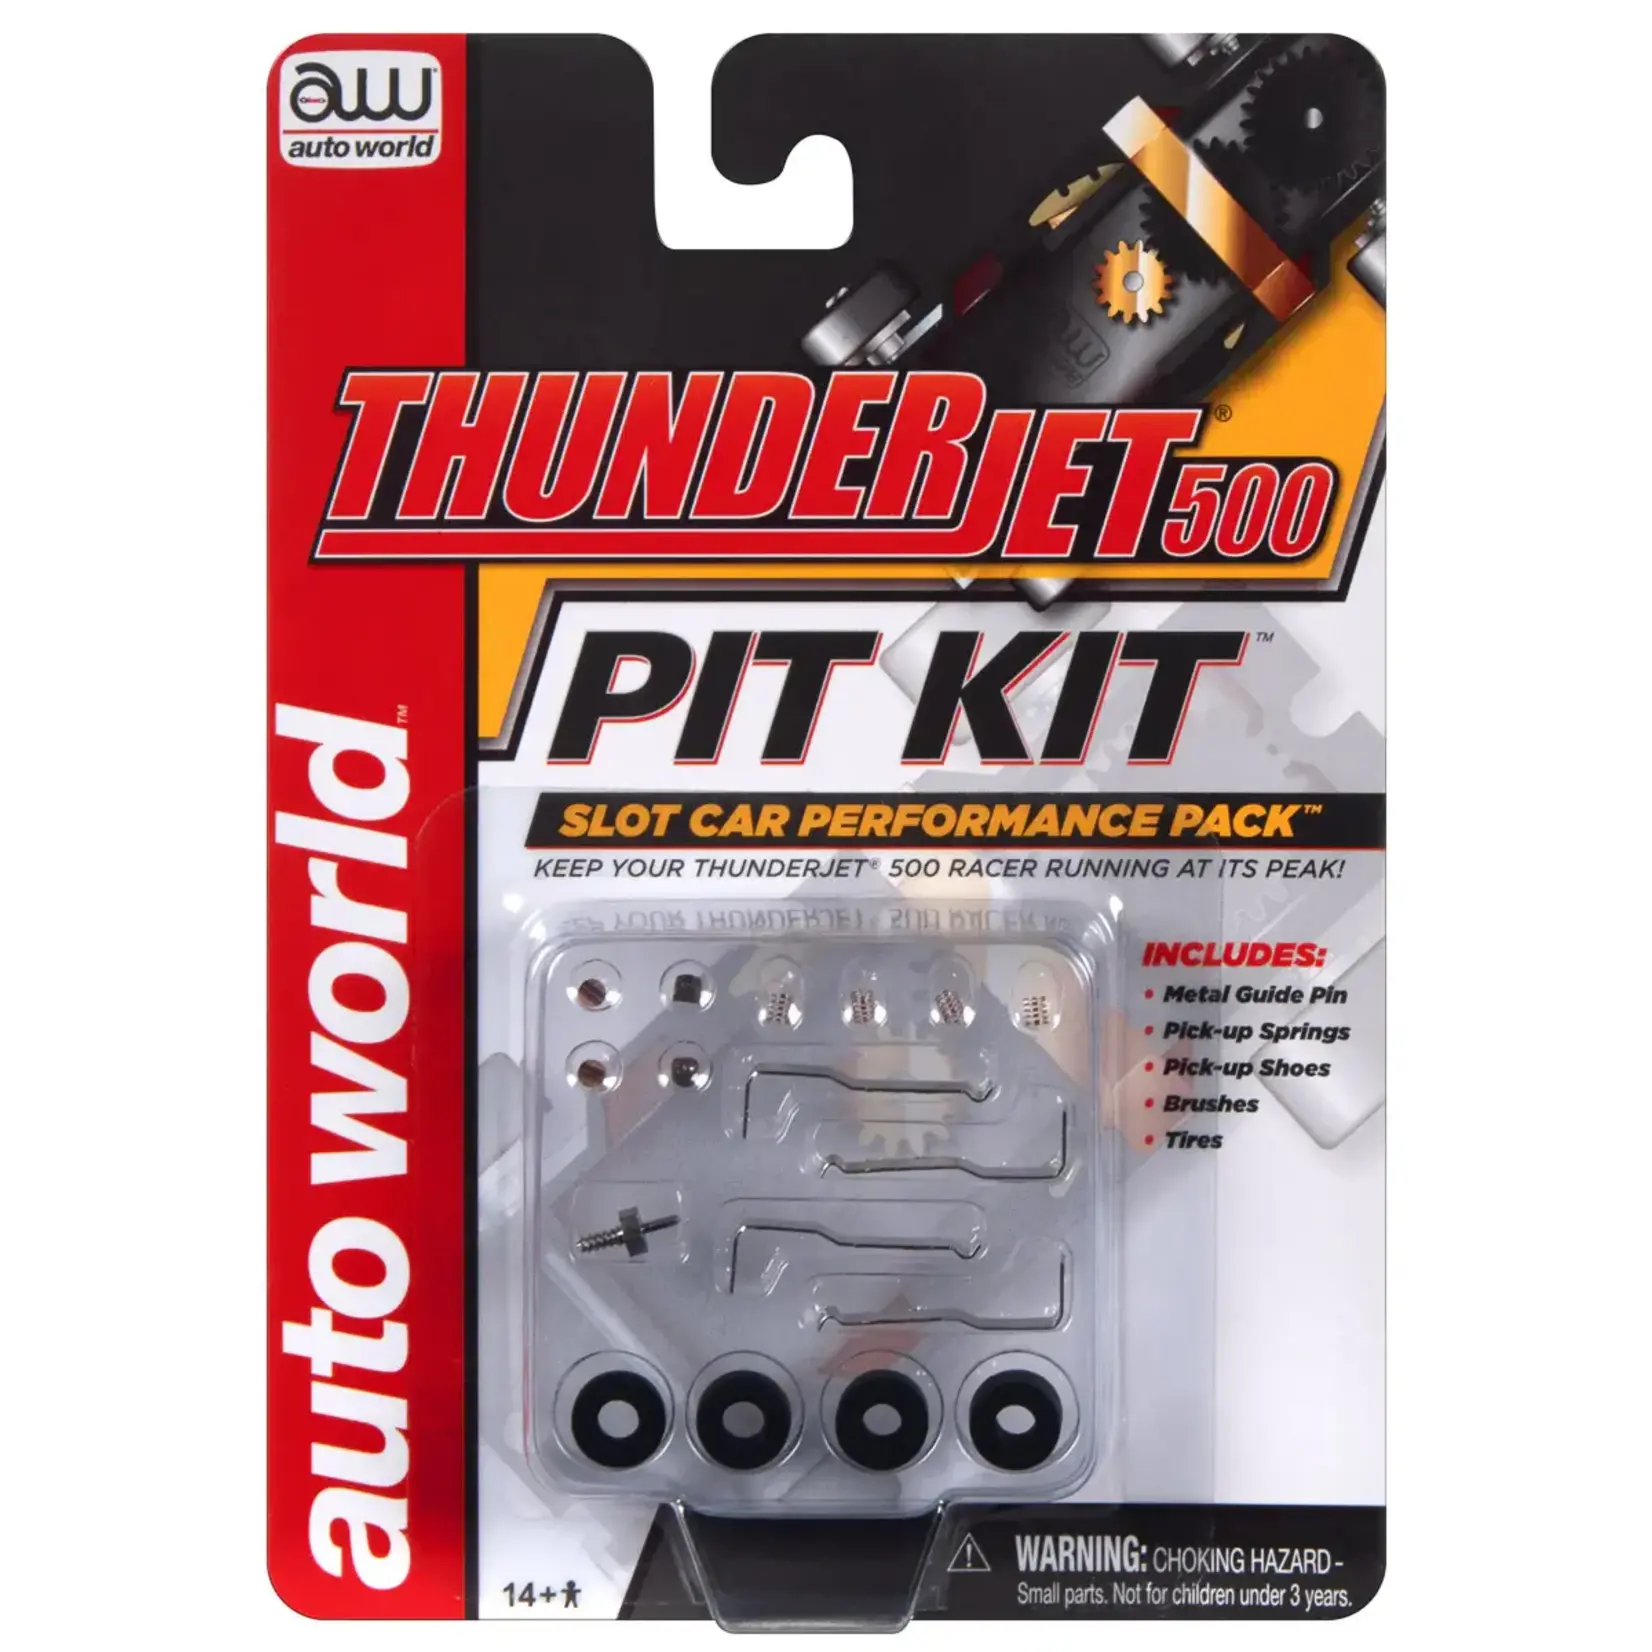 Auto World TRX118 Auto World Thunderjet 500 Pit Kit - Metal Guide Pin